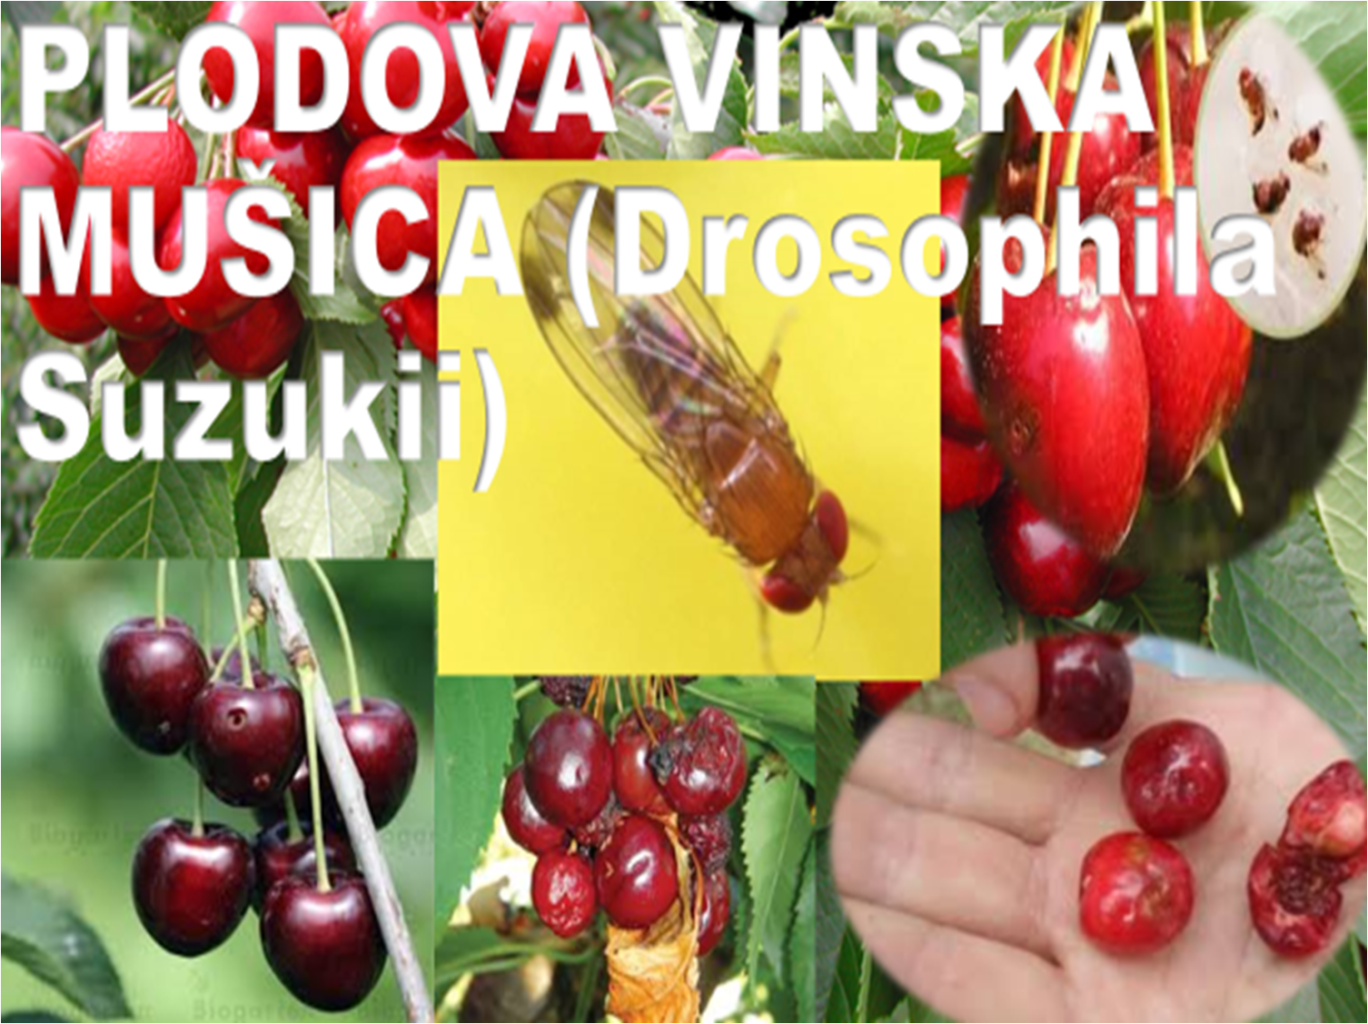 Slika1 1368x1024 - NARAVNI STOP: Plodova vinska mušica (Drosophila suzukii) - ki je nočna mora sadjarjev, vinogradnikov, pridelovalcev jagodičevja! Da jo preprečite, ukrepajte nemudoma! Z našim naravnim proizvodom POVSEM BREZ KARENCE, ki je dovoljen tudi v ekološki pridelavi. V uporabi že od leta 2015!